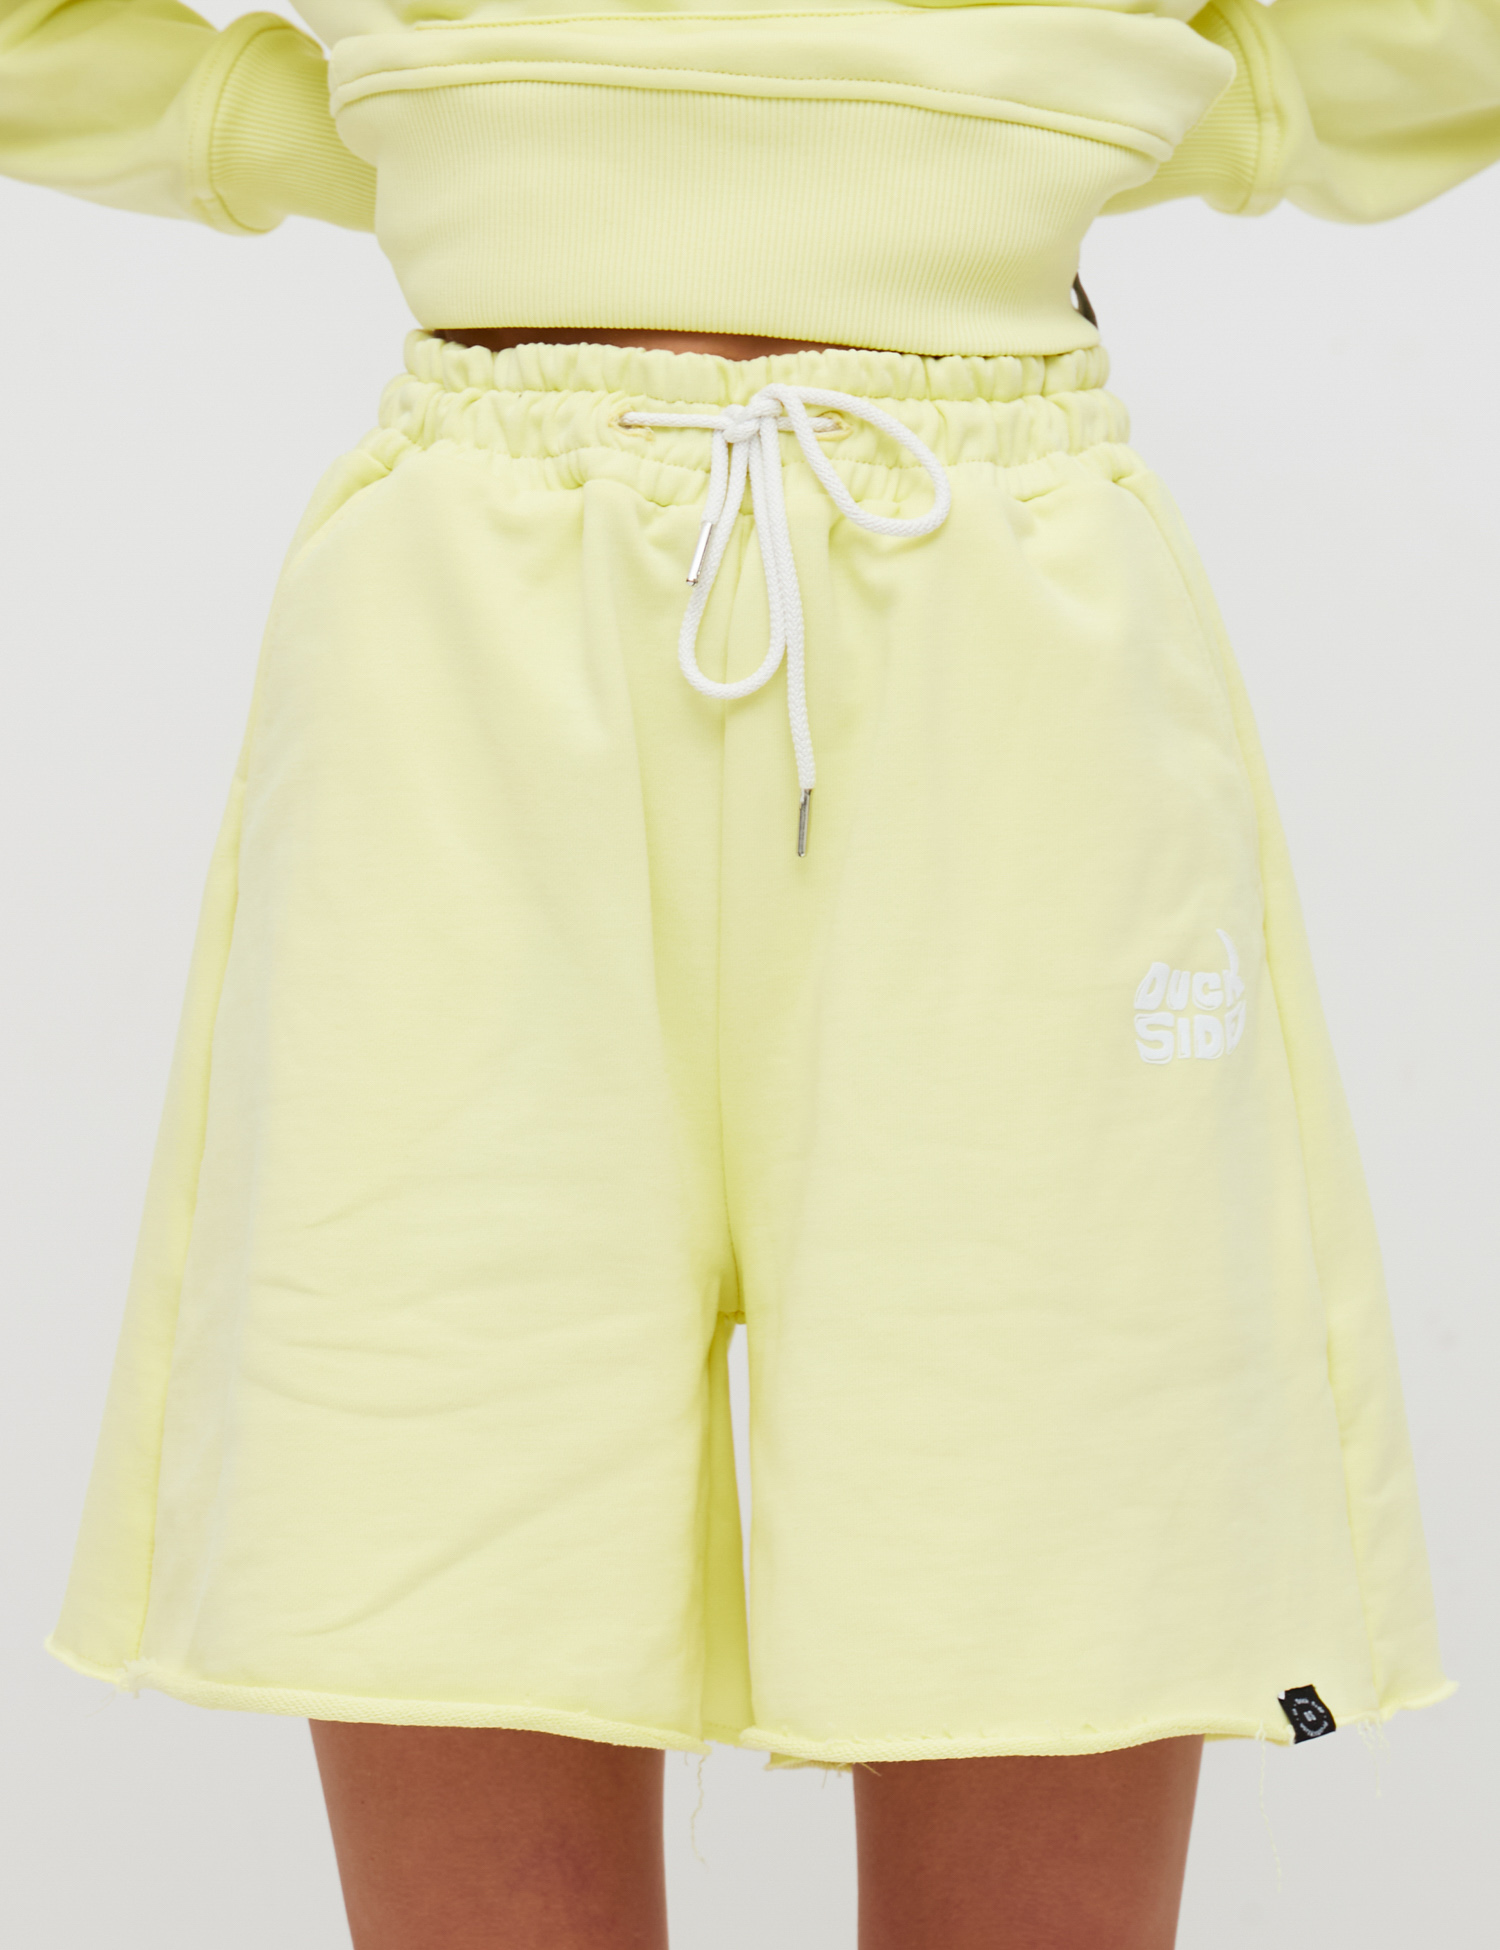 Картинка Жіночі жовті шорти